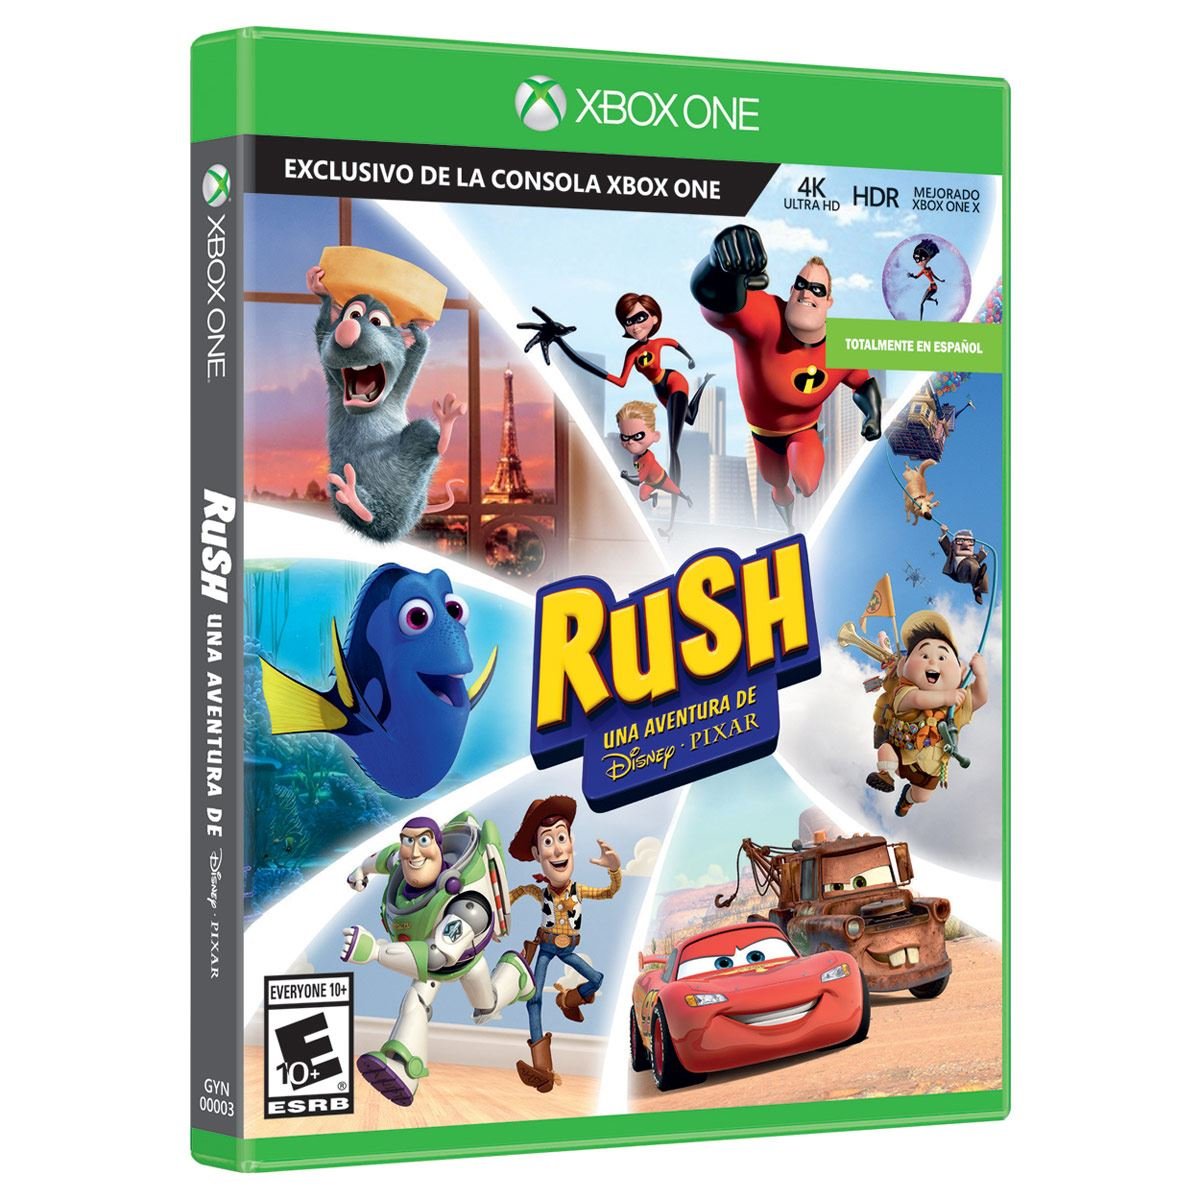 Rush Disney Pixar Xbox One